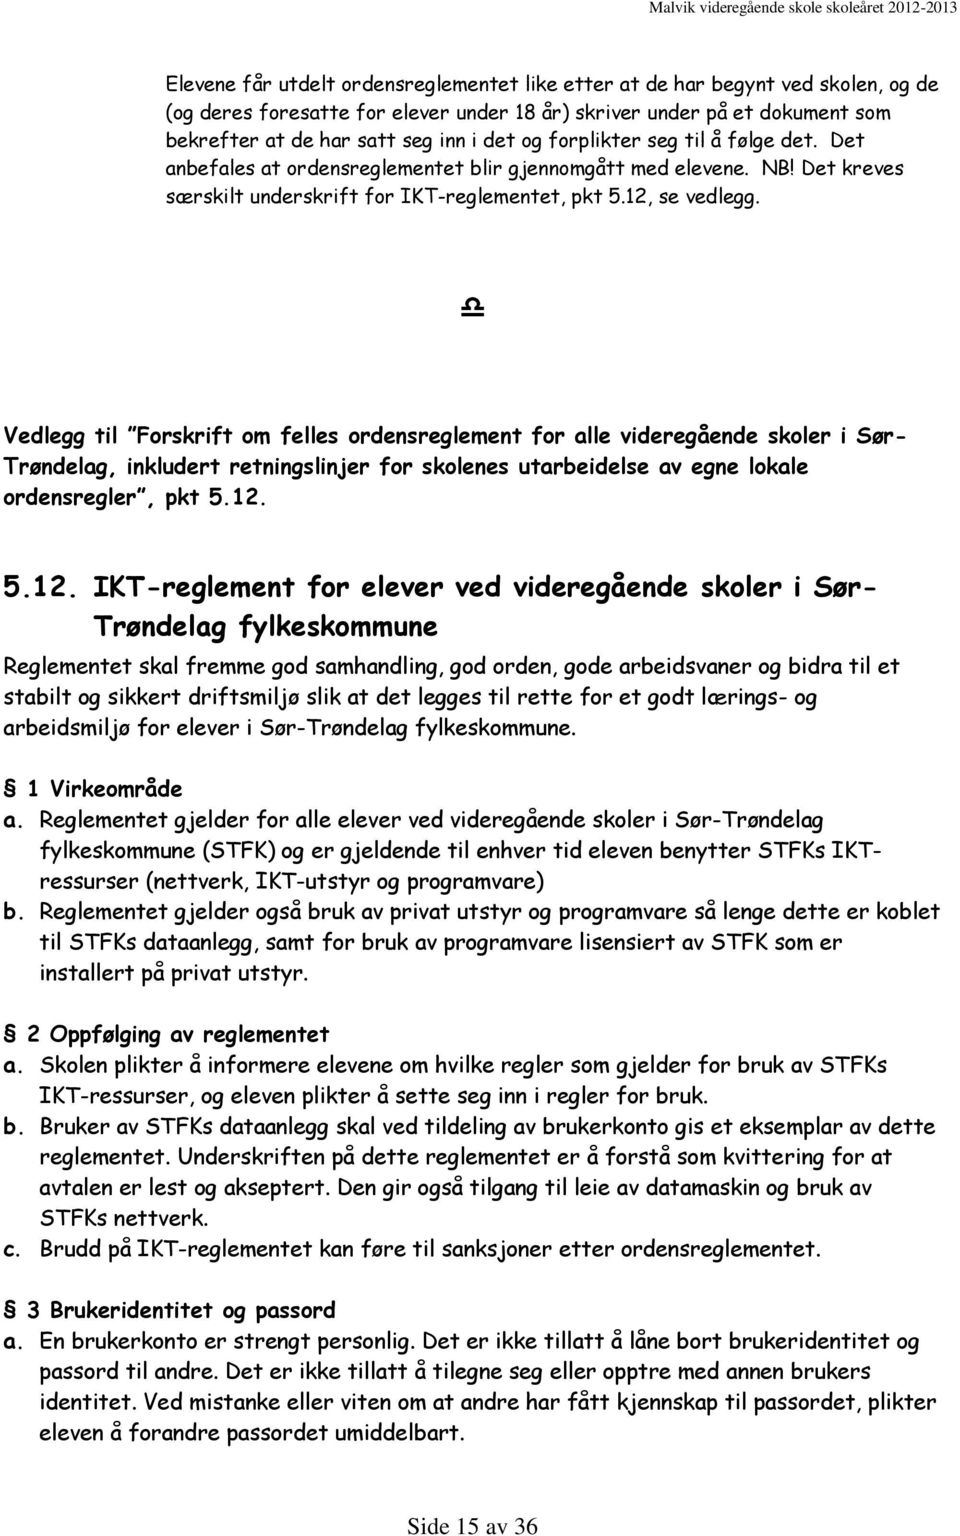 Vedlegg til Forskrift om felles ordensreglement for alle videregående skoler i Sør- Trøndelag, inkludert retningslinjer for skolenes utarbeidelse av egne lokale ordensregler, pkt 5.12.